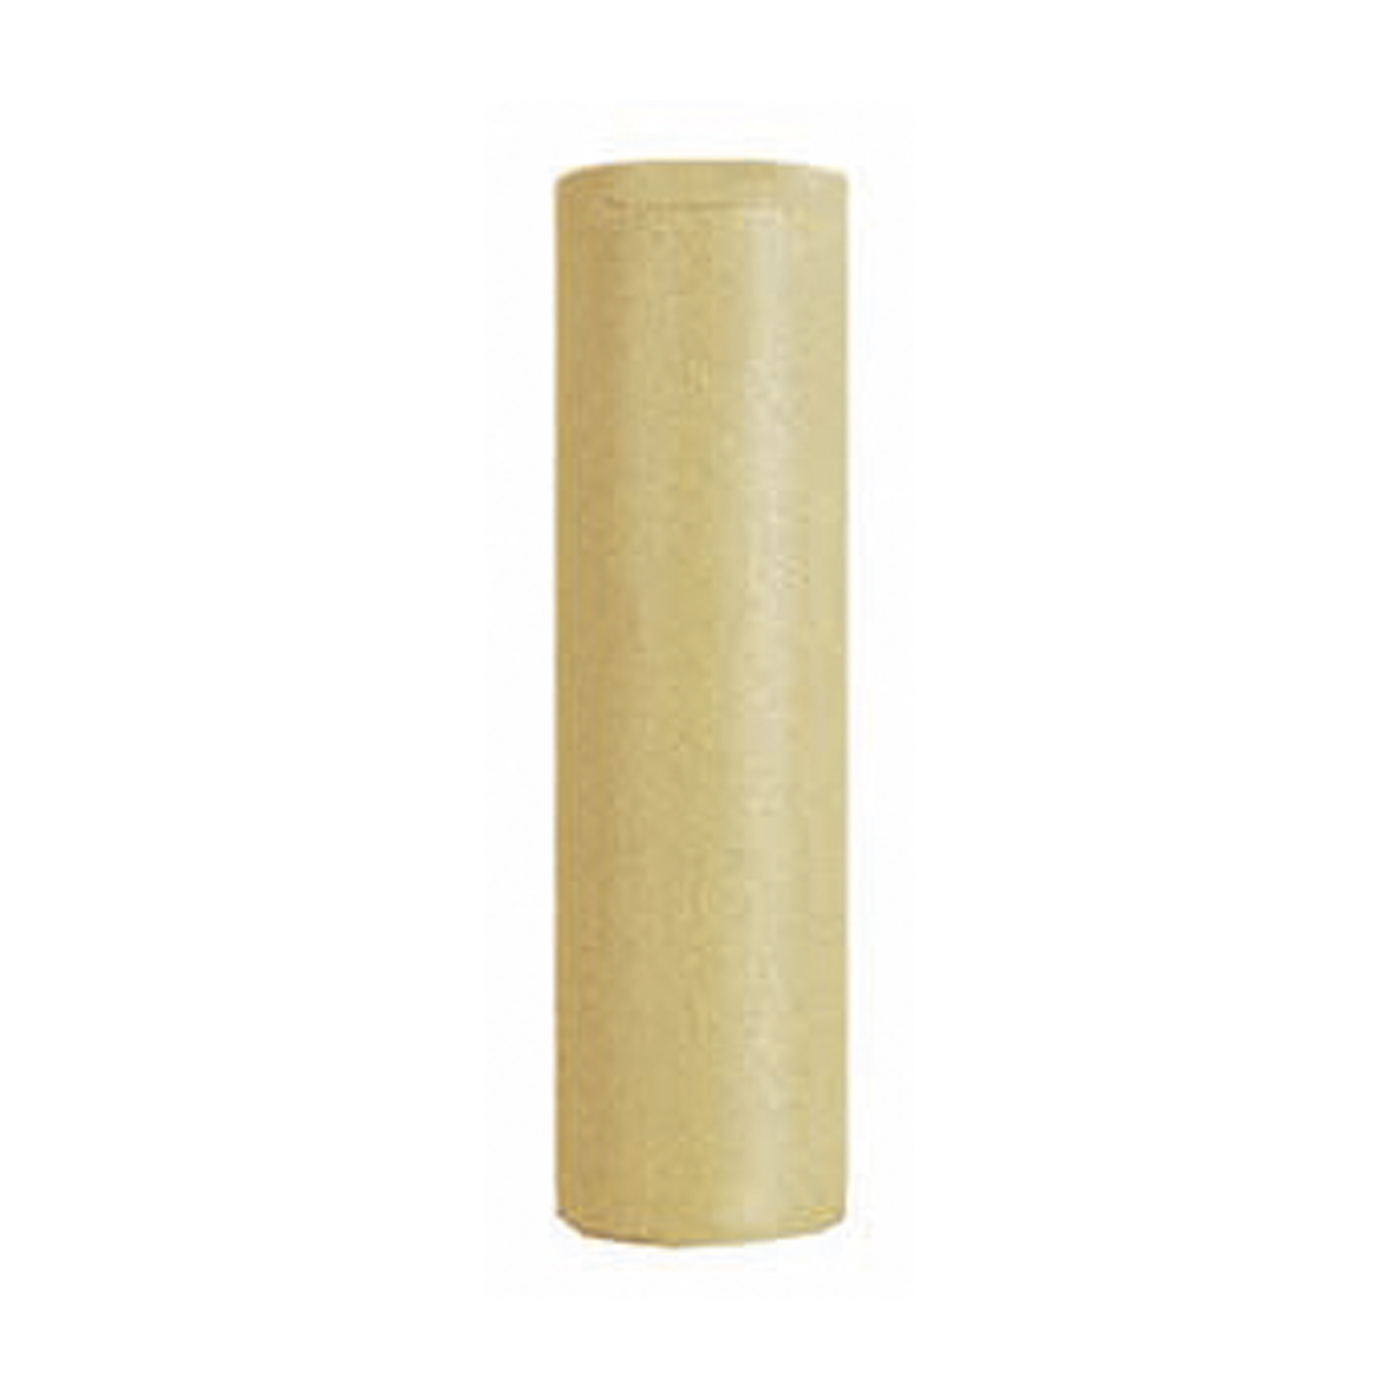 Goldino Pre-Polisher, Cylinder, ø 6 x 22 mm - 1 piece